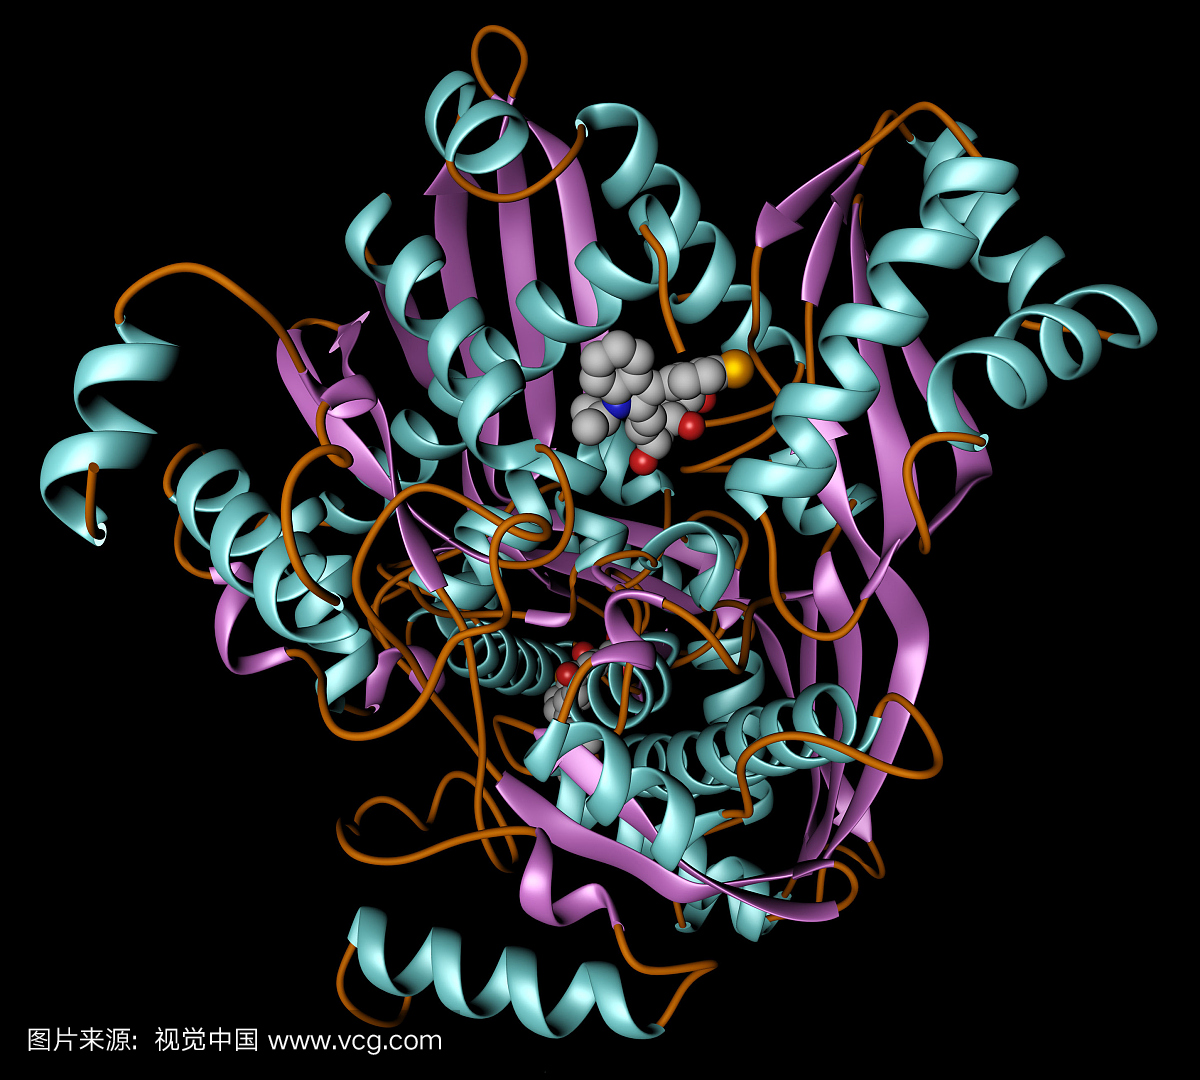 在这里显示为丝带模型的酶HMG-CoA(3-羟基-